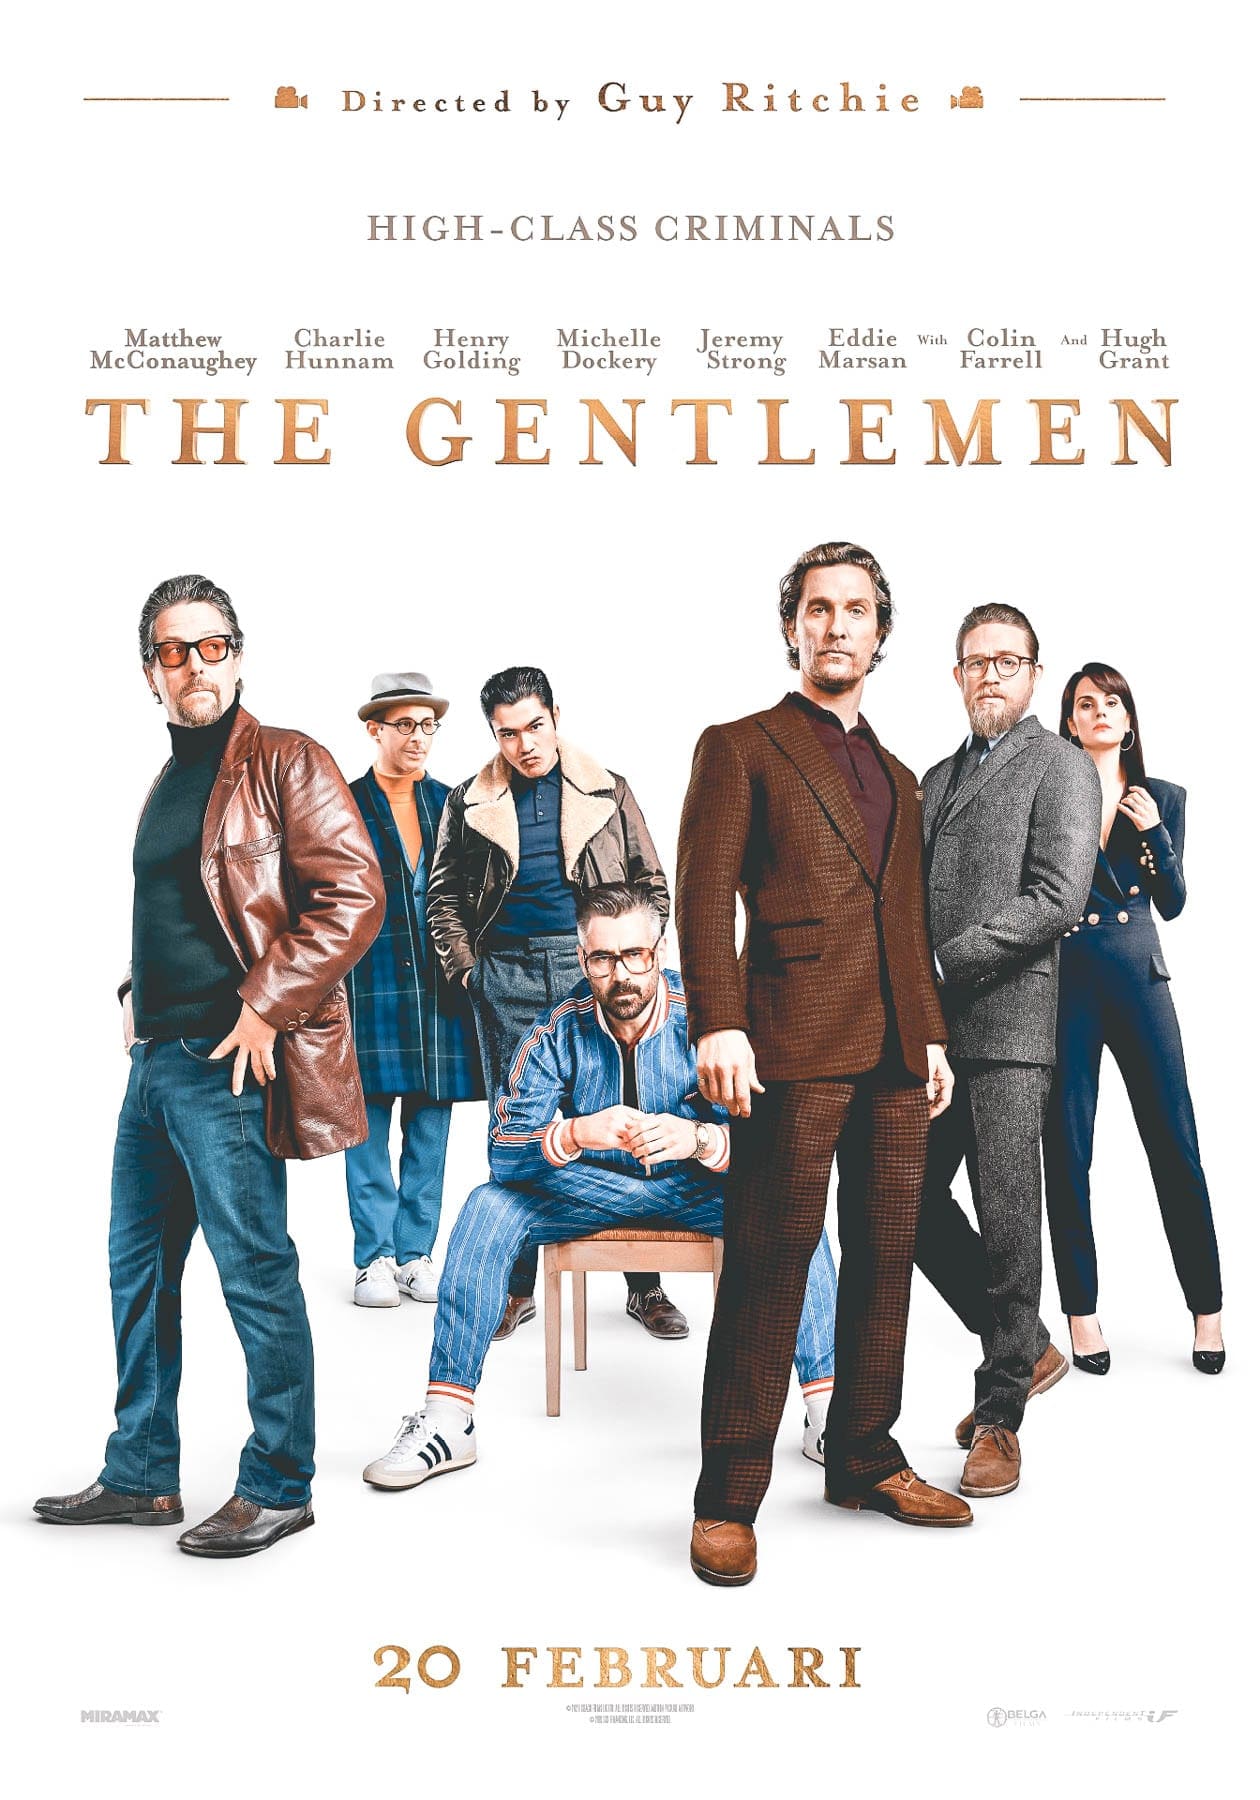 The Gentlemen trailer cast